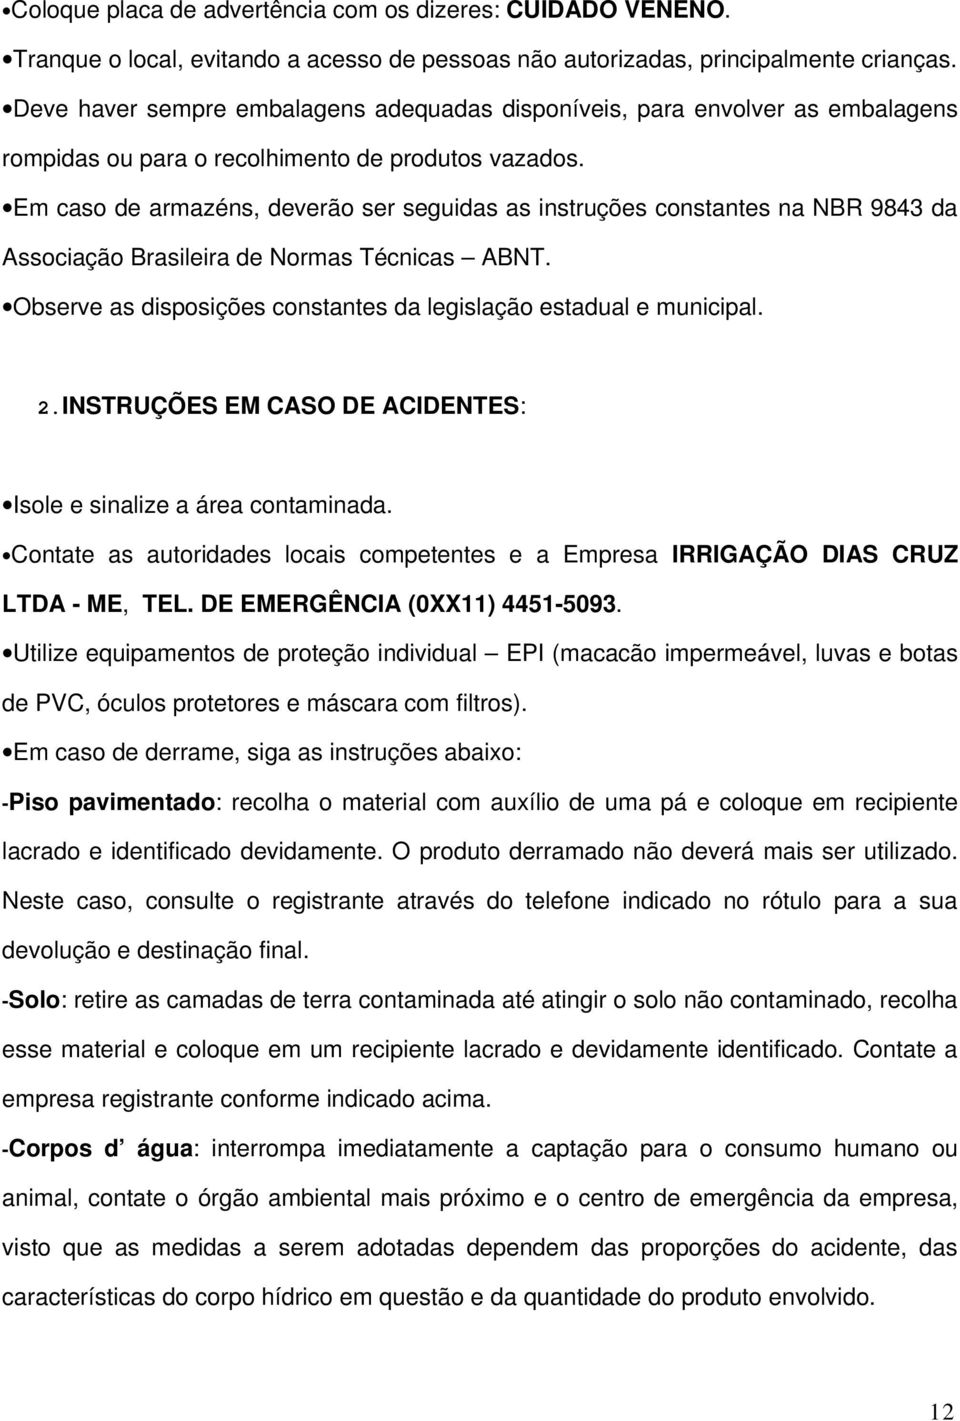 Em caso de armazéns, deverão ser seguidas as instruções constantes na NBR 9843 da Associação Brasileira de Normas Técnicas ABNT. Observe as disposições constantes da legislação estadual e municipal.